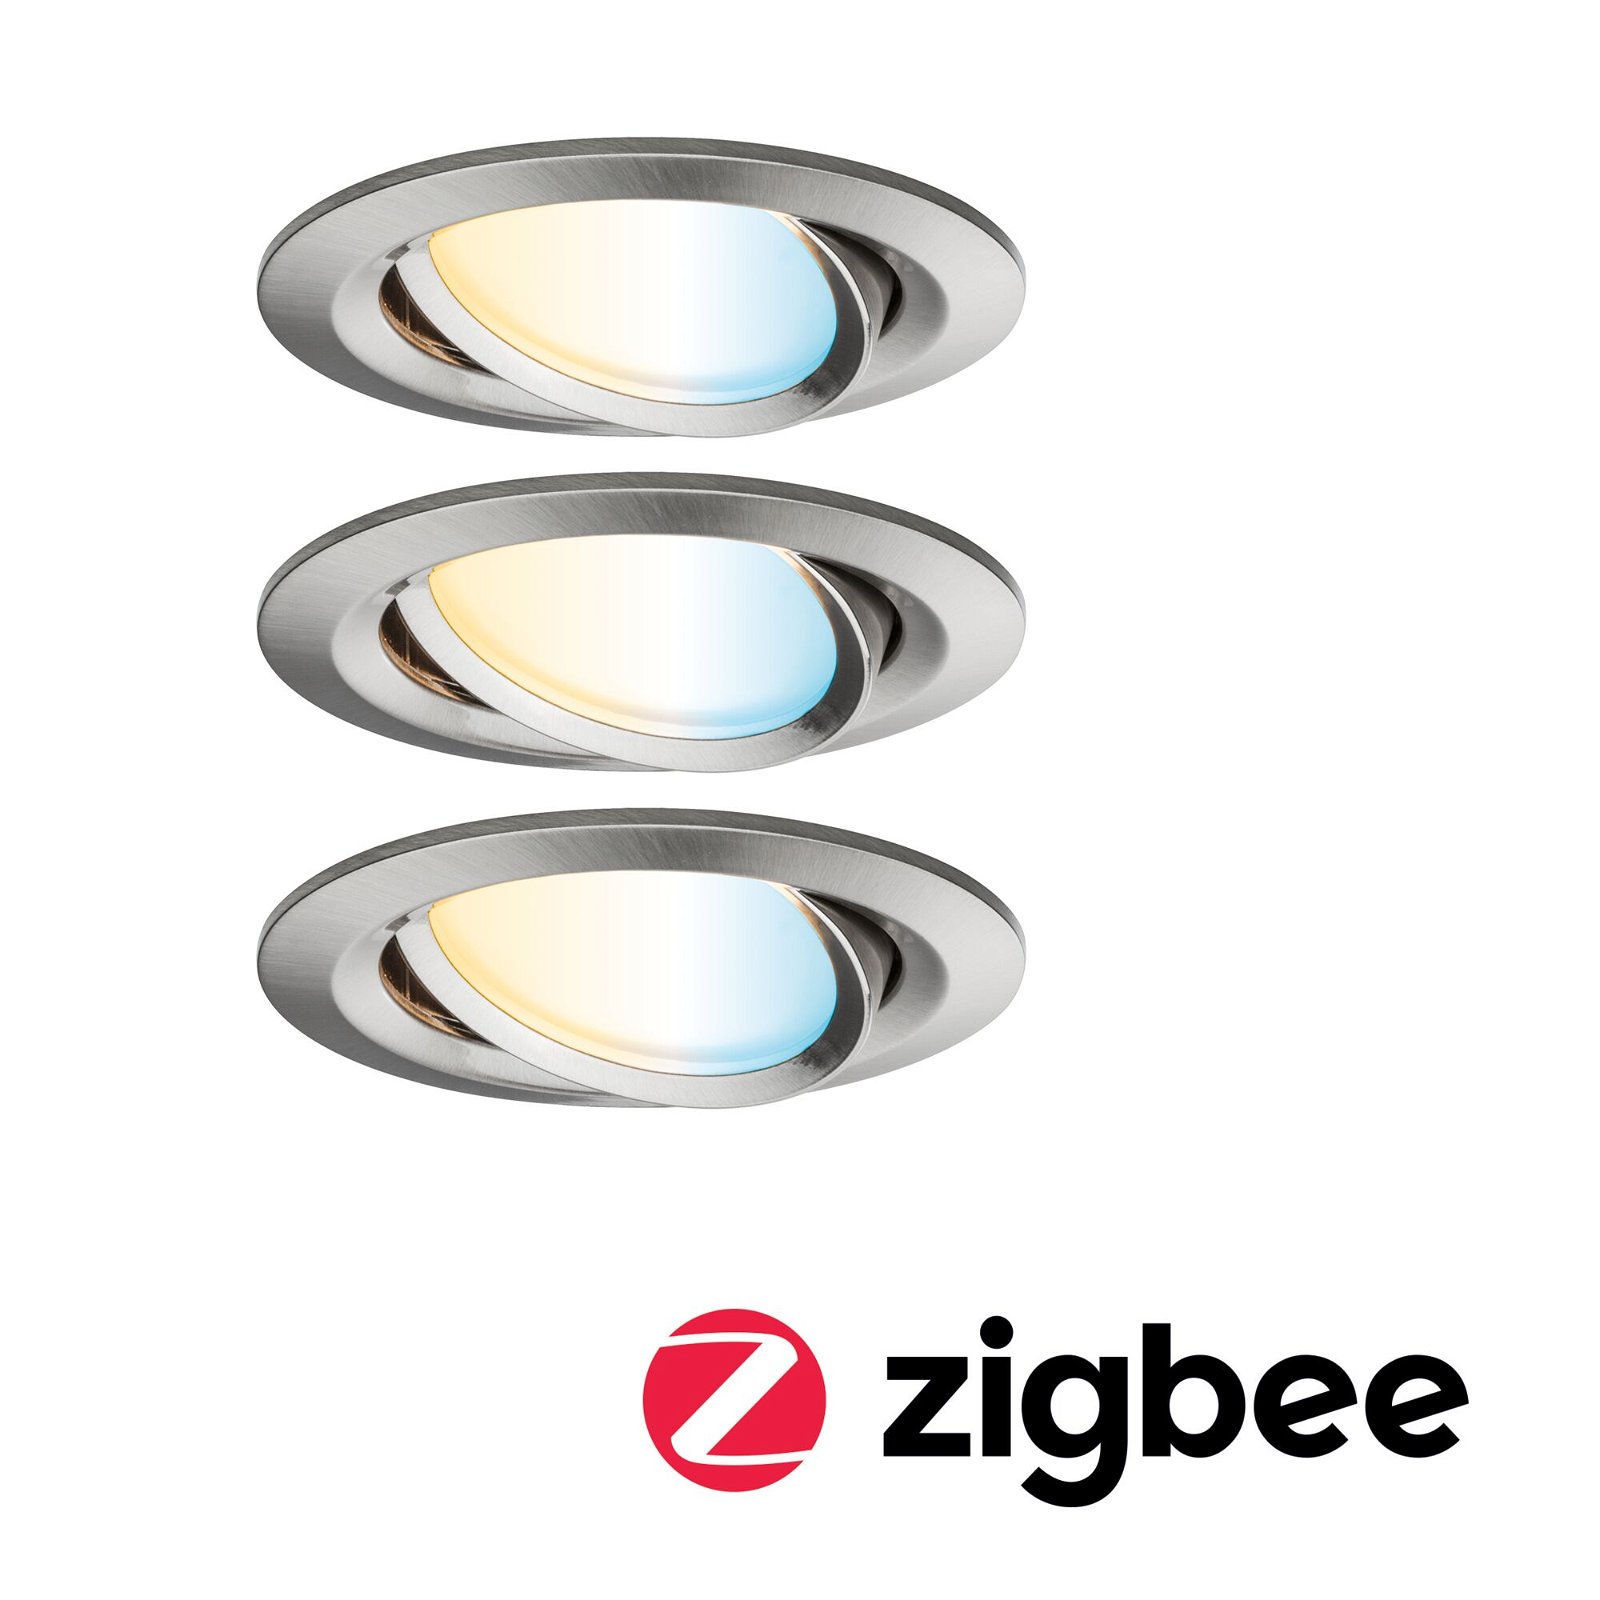 LED Einbauleuchte Smart Home Zigbee Nova Plus Coin Basisset schwenkbar rund 84mm 50° Coin 3x6W 3x470lm 230V dimmbar Tunable White Eisen gebürstet